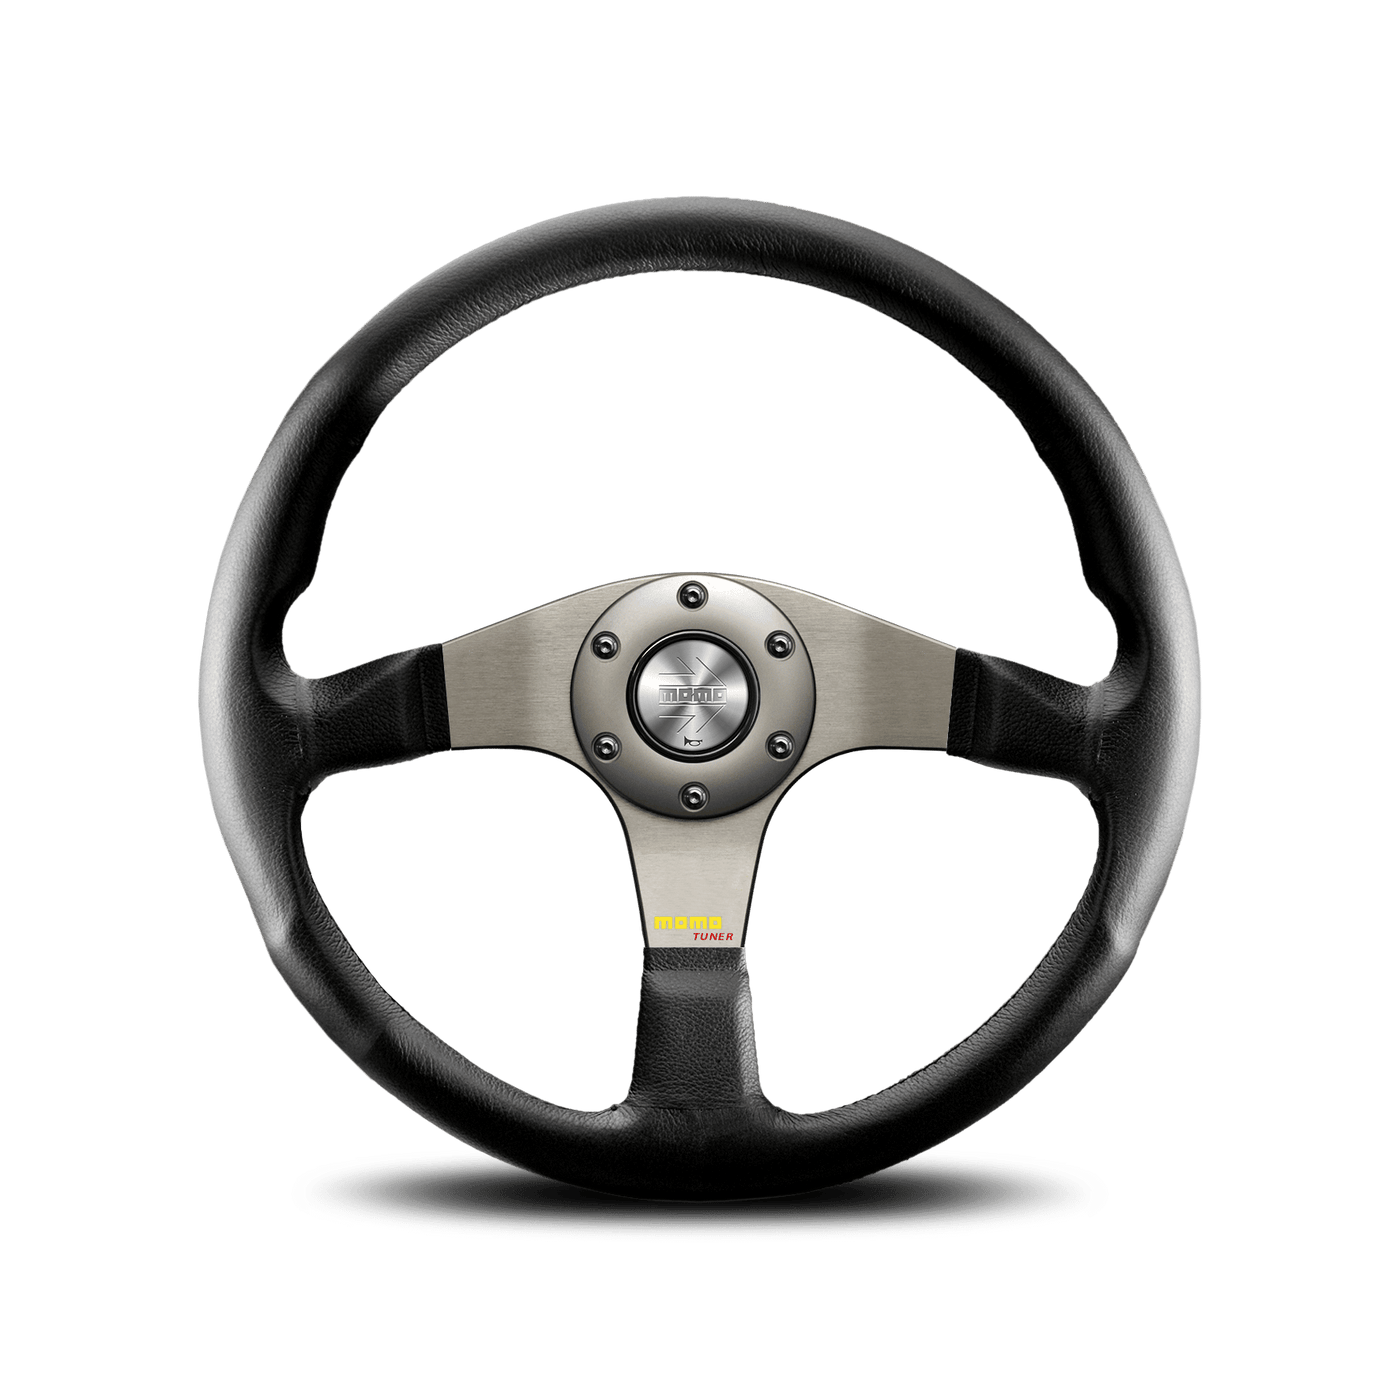 MOMO Tuner Steering Wheel - 350mm